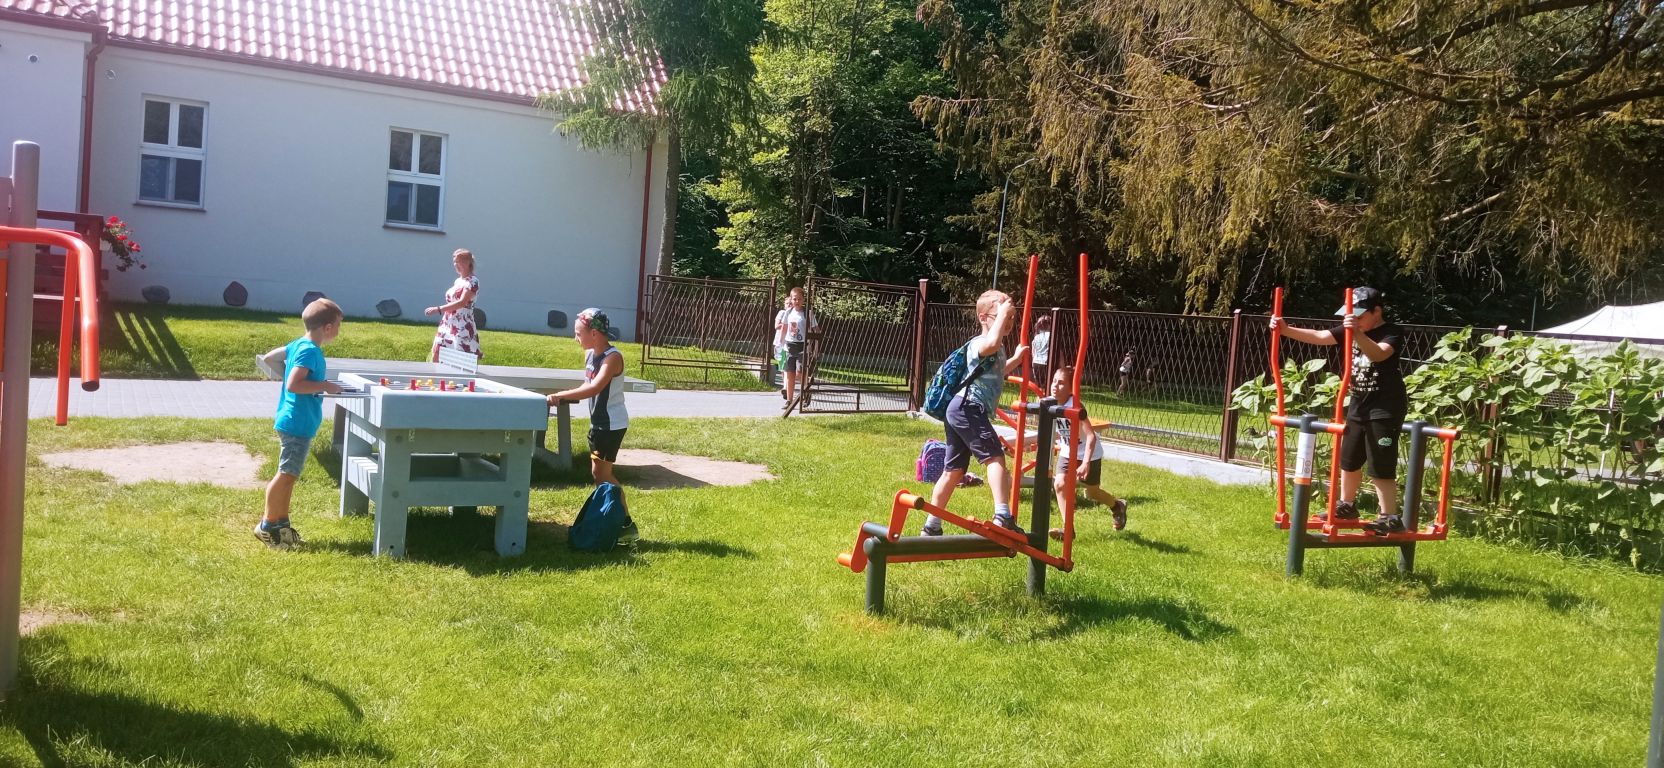 Fotografia przedstawia uczestników zajęć bawiących się na terenie Ośrodka Wypoczynkowego w Górznie. Dzieci korzystają z piłkarzyków, siłowni i stołu do tenisa